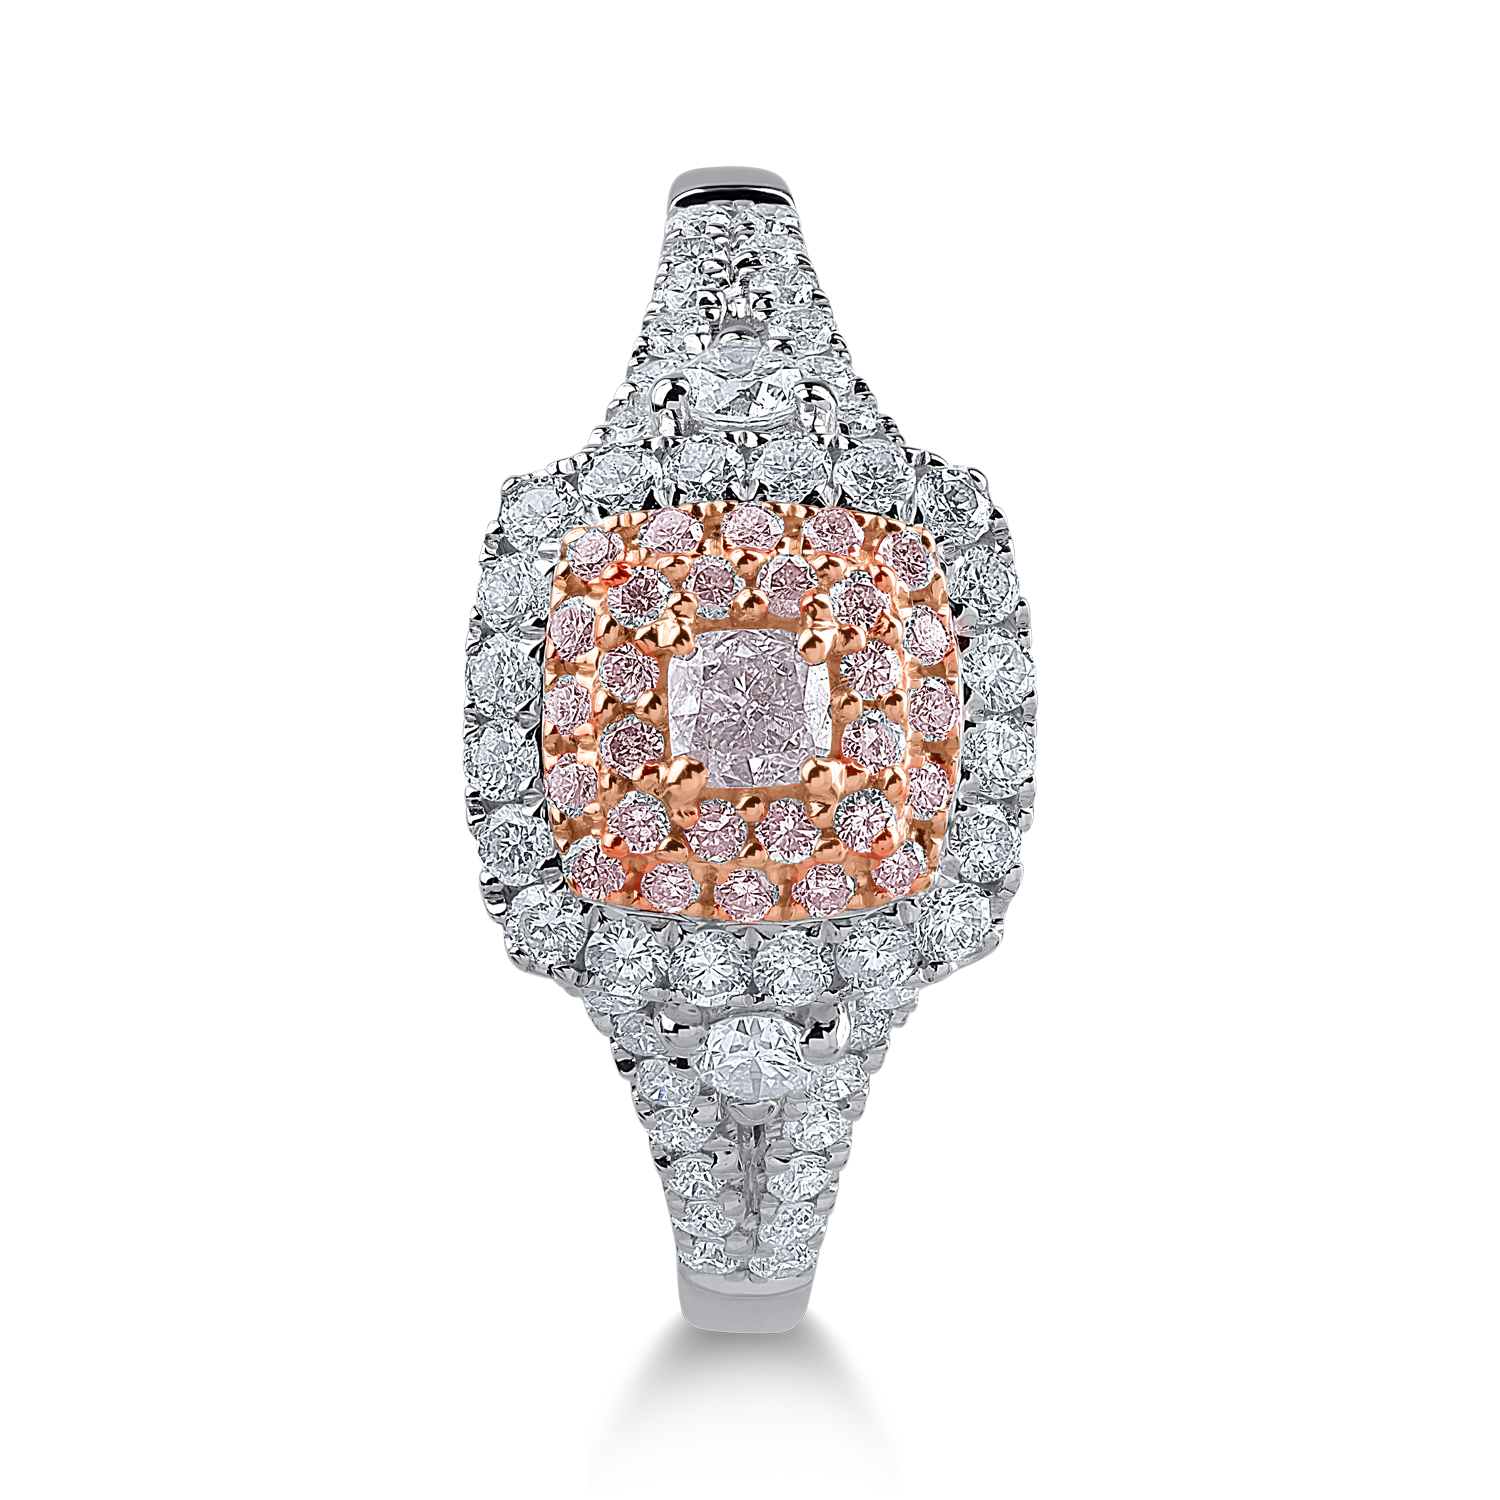 Inel din aur alb-roz cu diamante transparente de 0.51ct si diamante roz de 0.23ct